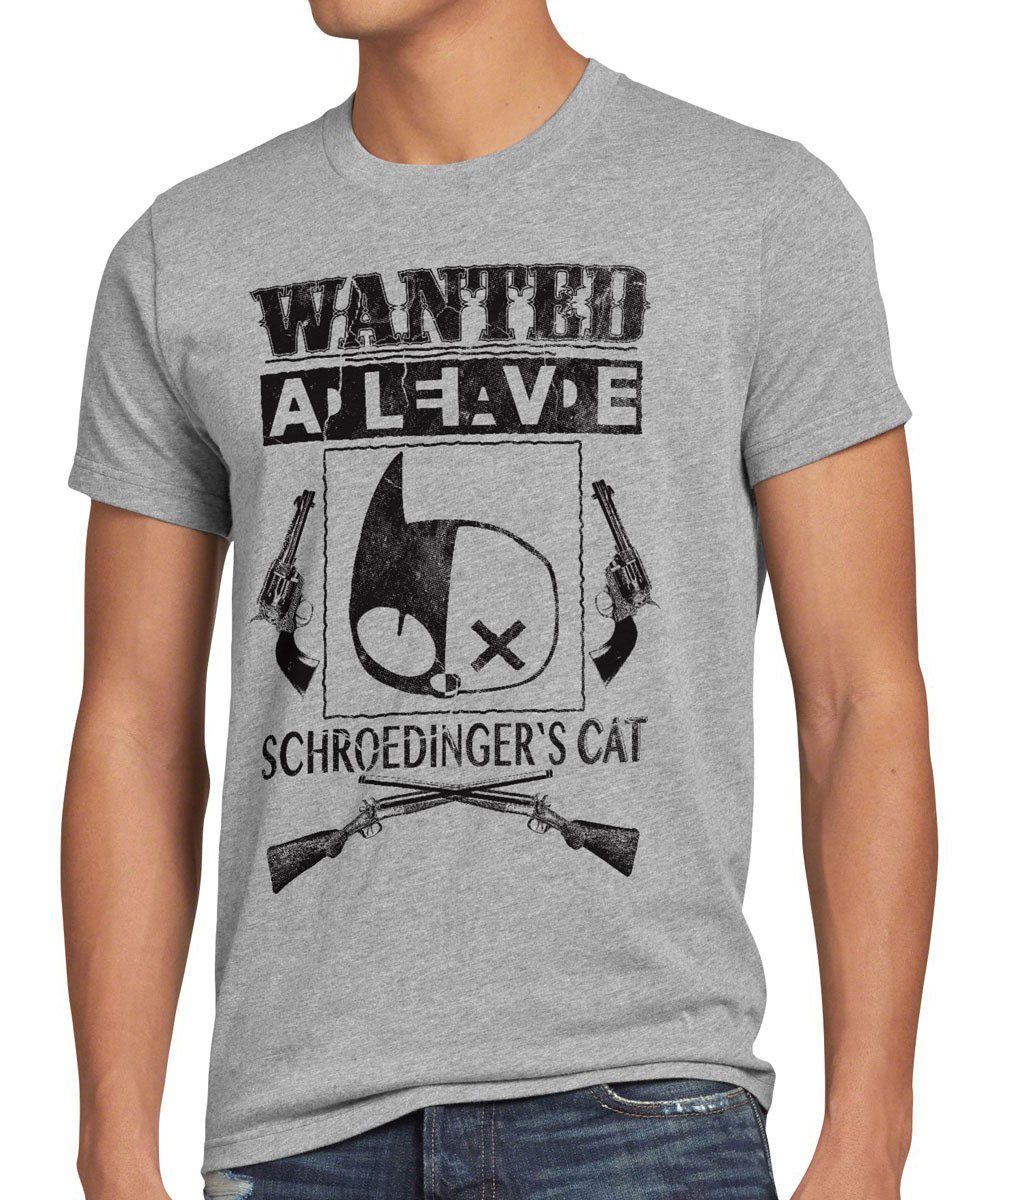 Katze bang Herren theory Schroedinger's sheldon meliert schrödingers grau T-Shirt style3 Print-Shirt big Wanted